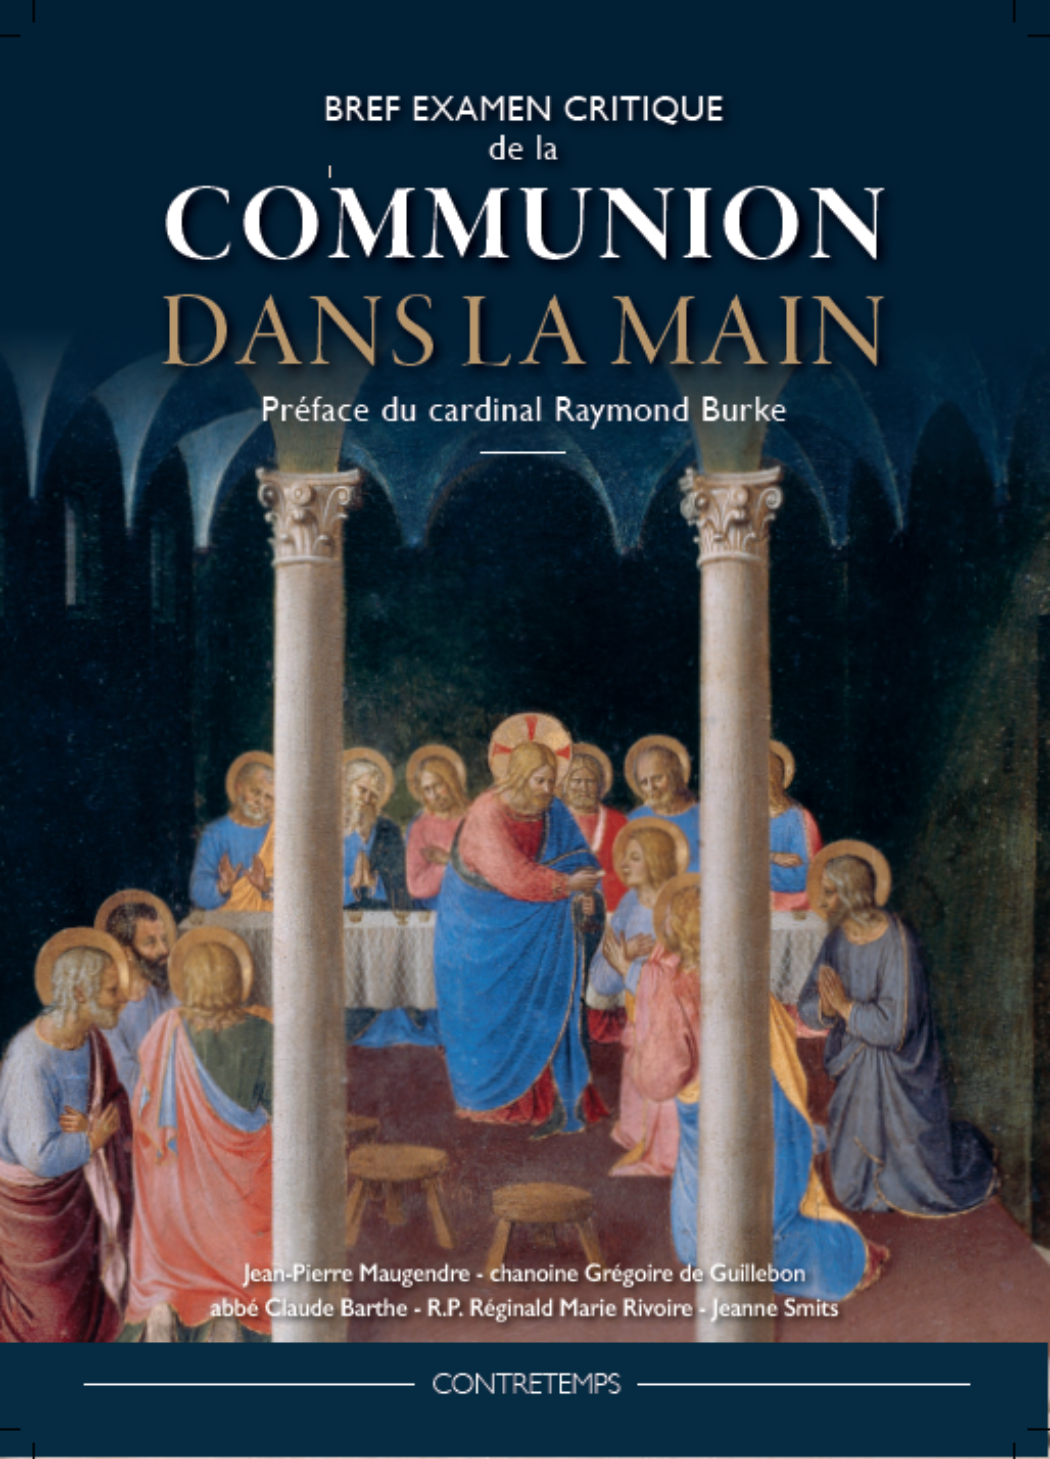 Le cardinal Sarah salue l’édition et souhaite la diffusion du “Bref examen critique de la communion dans la main”